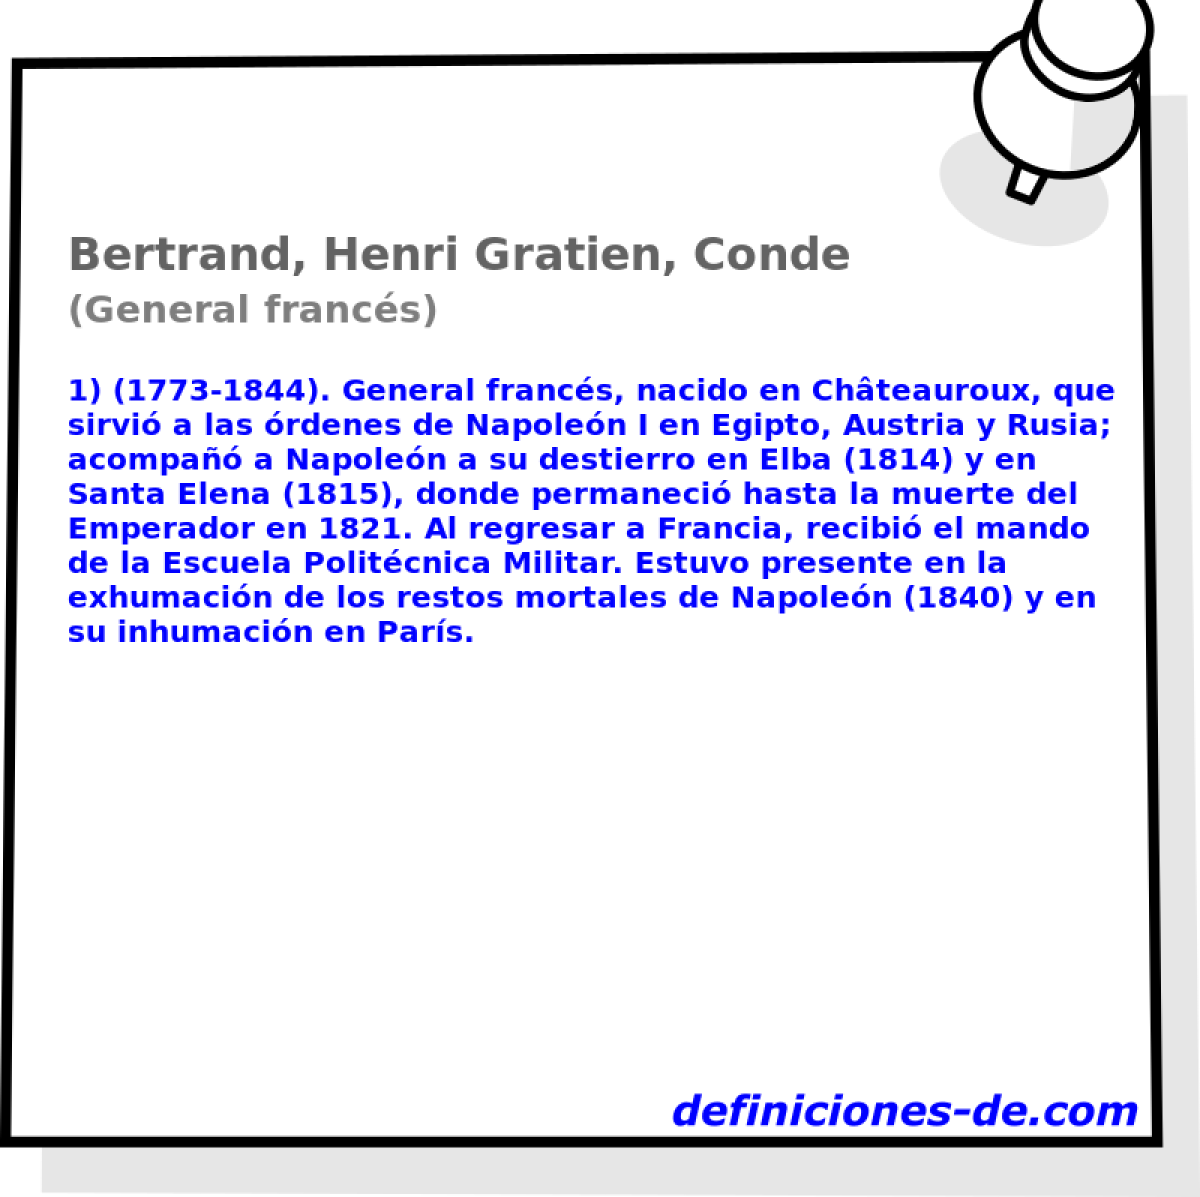 Bertrand, Henri Gratien, Conde (General francs)